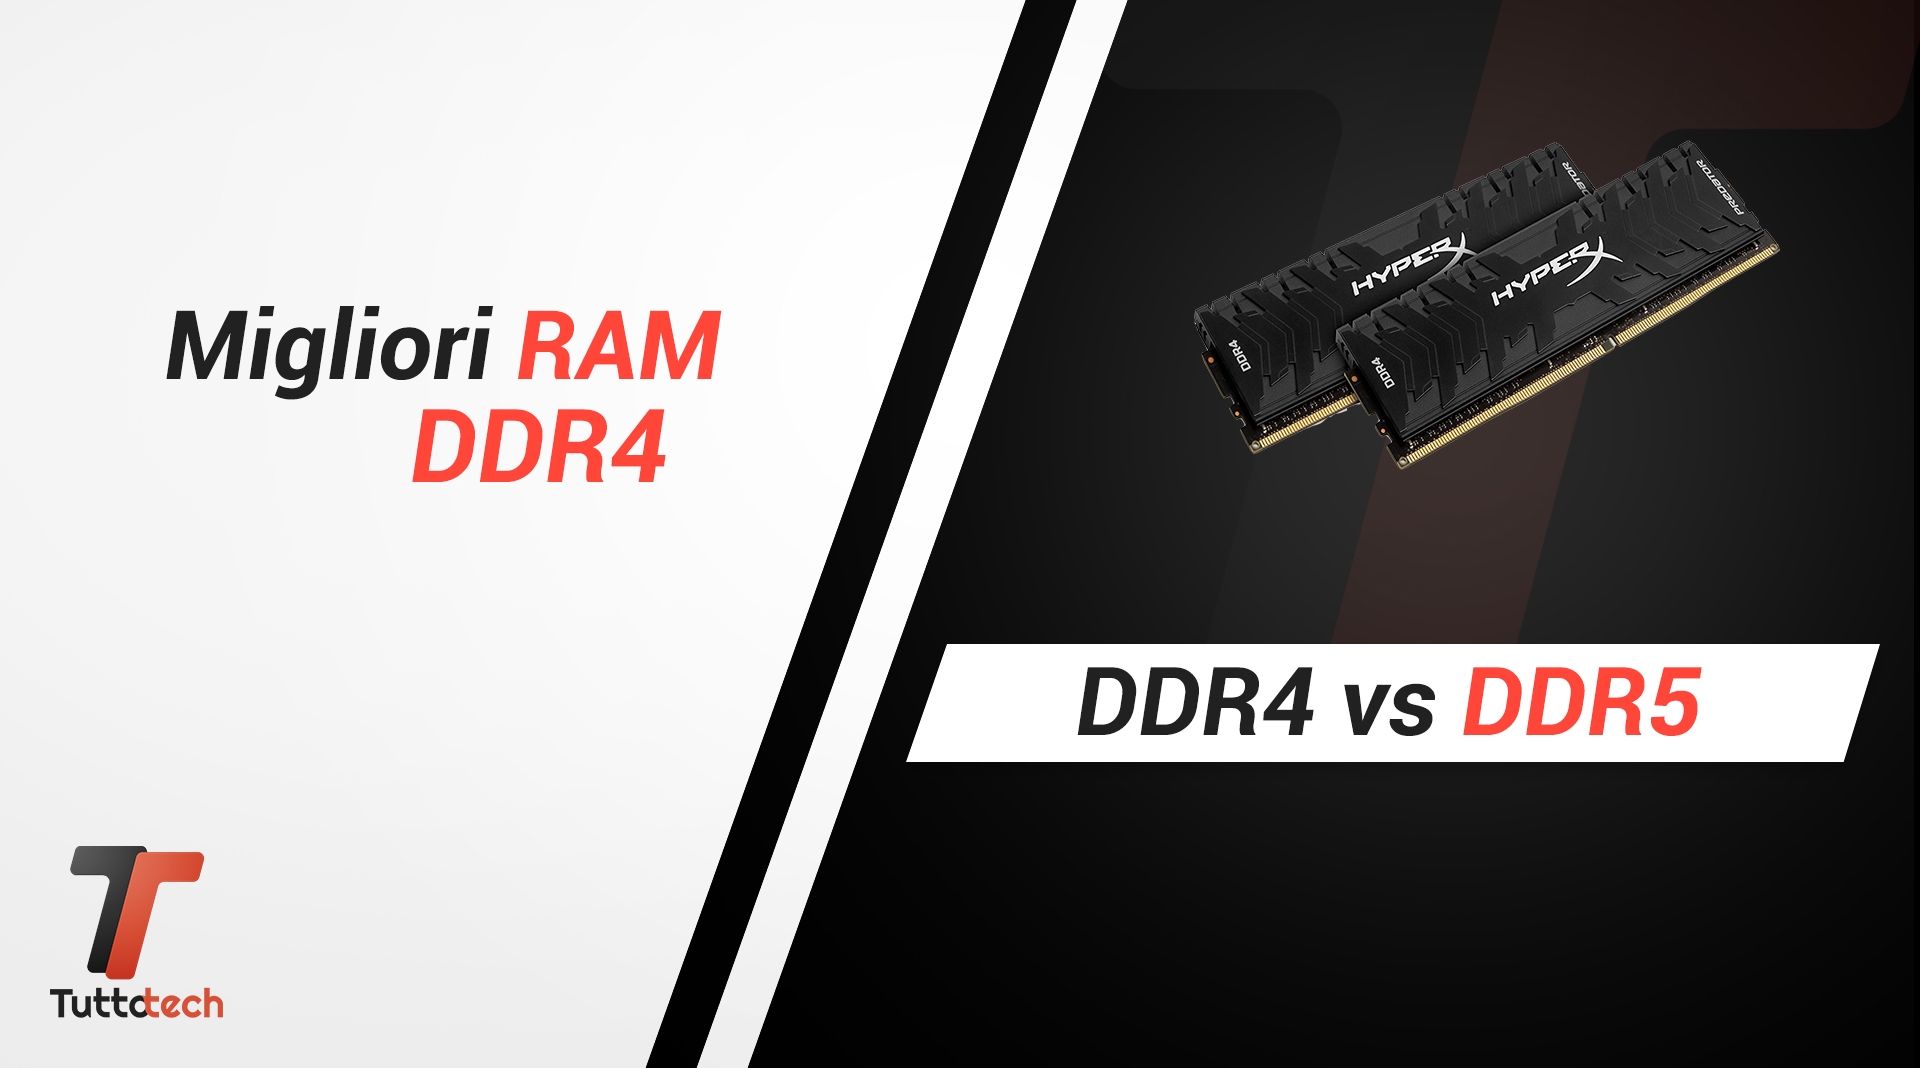 Migliori RAM DDR4 VS DDR5